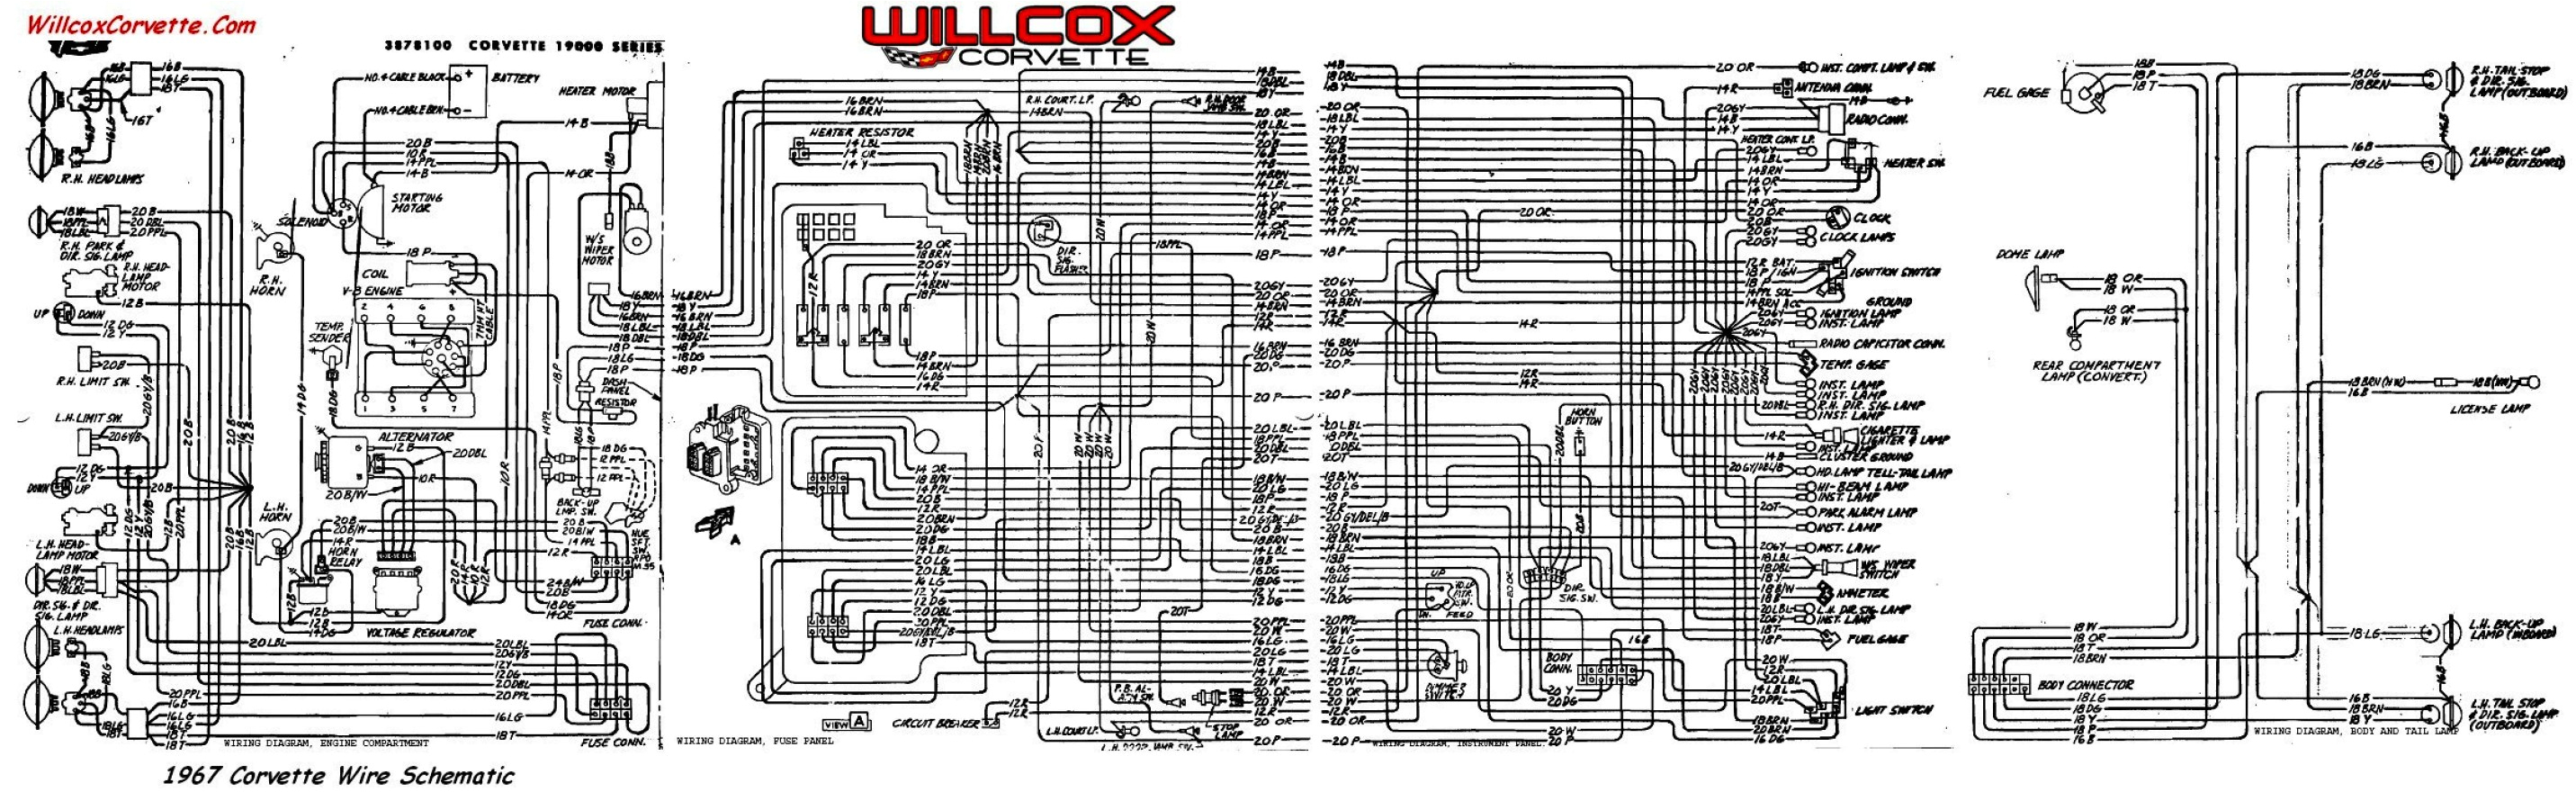 1971 corvette wiring diagram wiring diagram week 1971 corvette radio wiring 1970 corvette wiring harness wiring